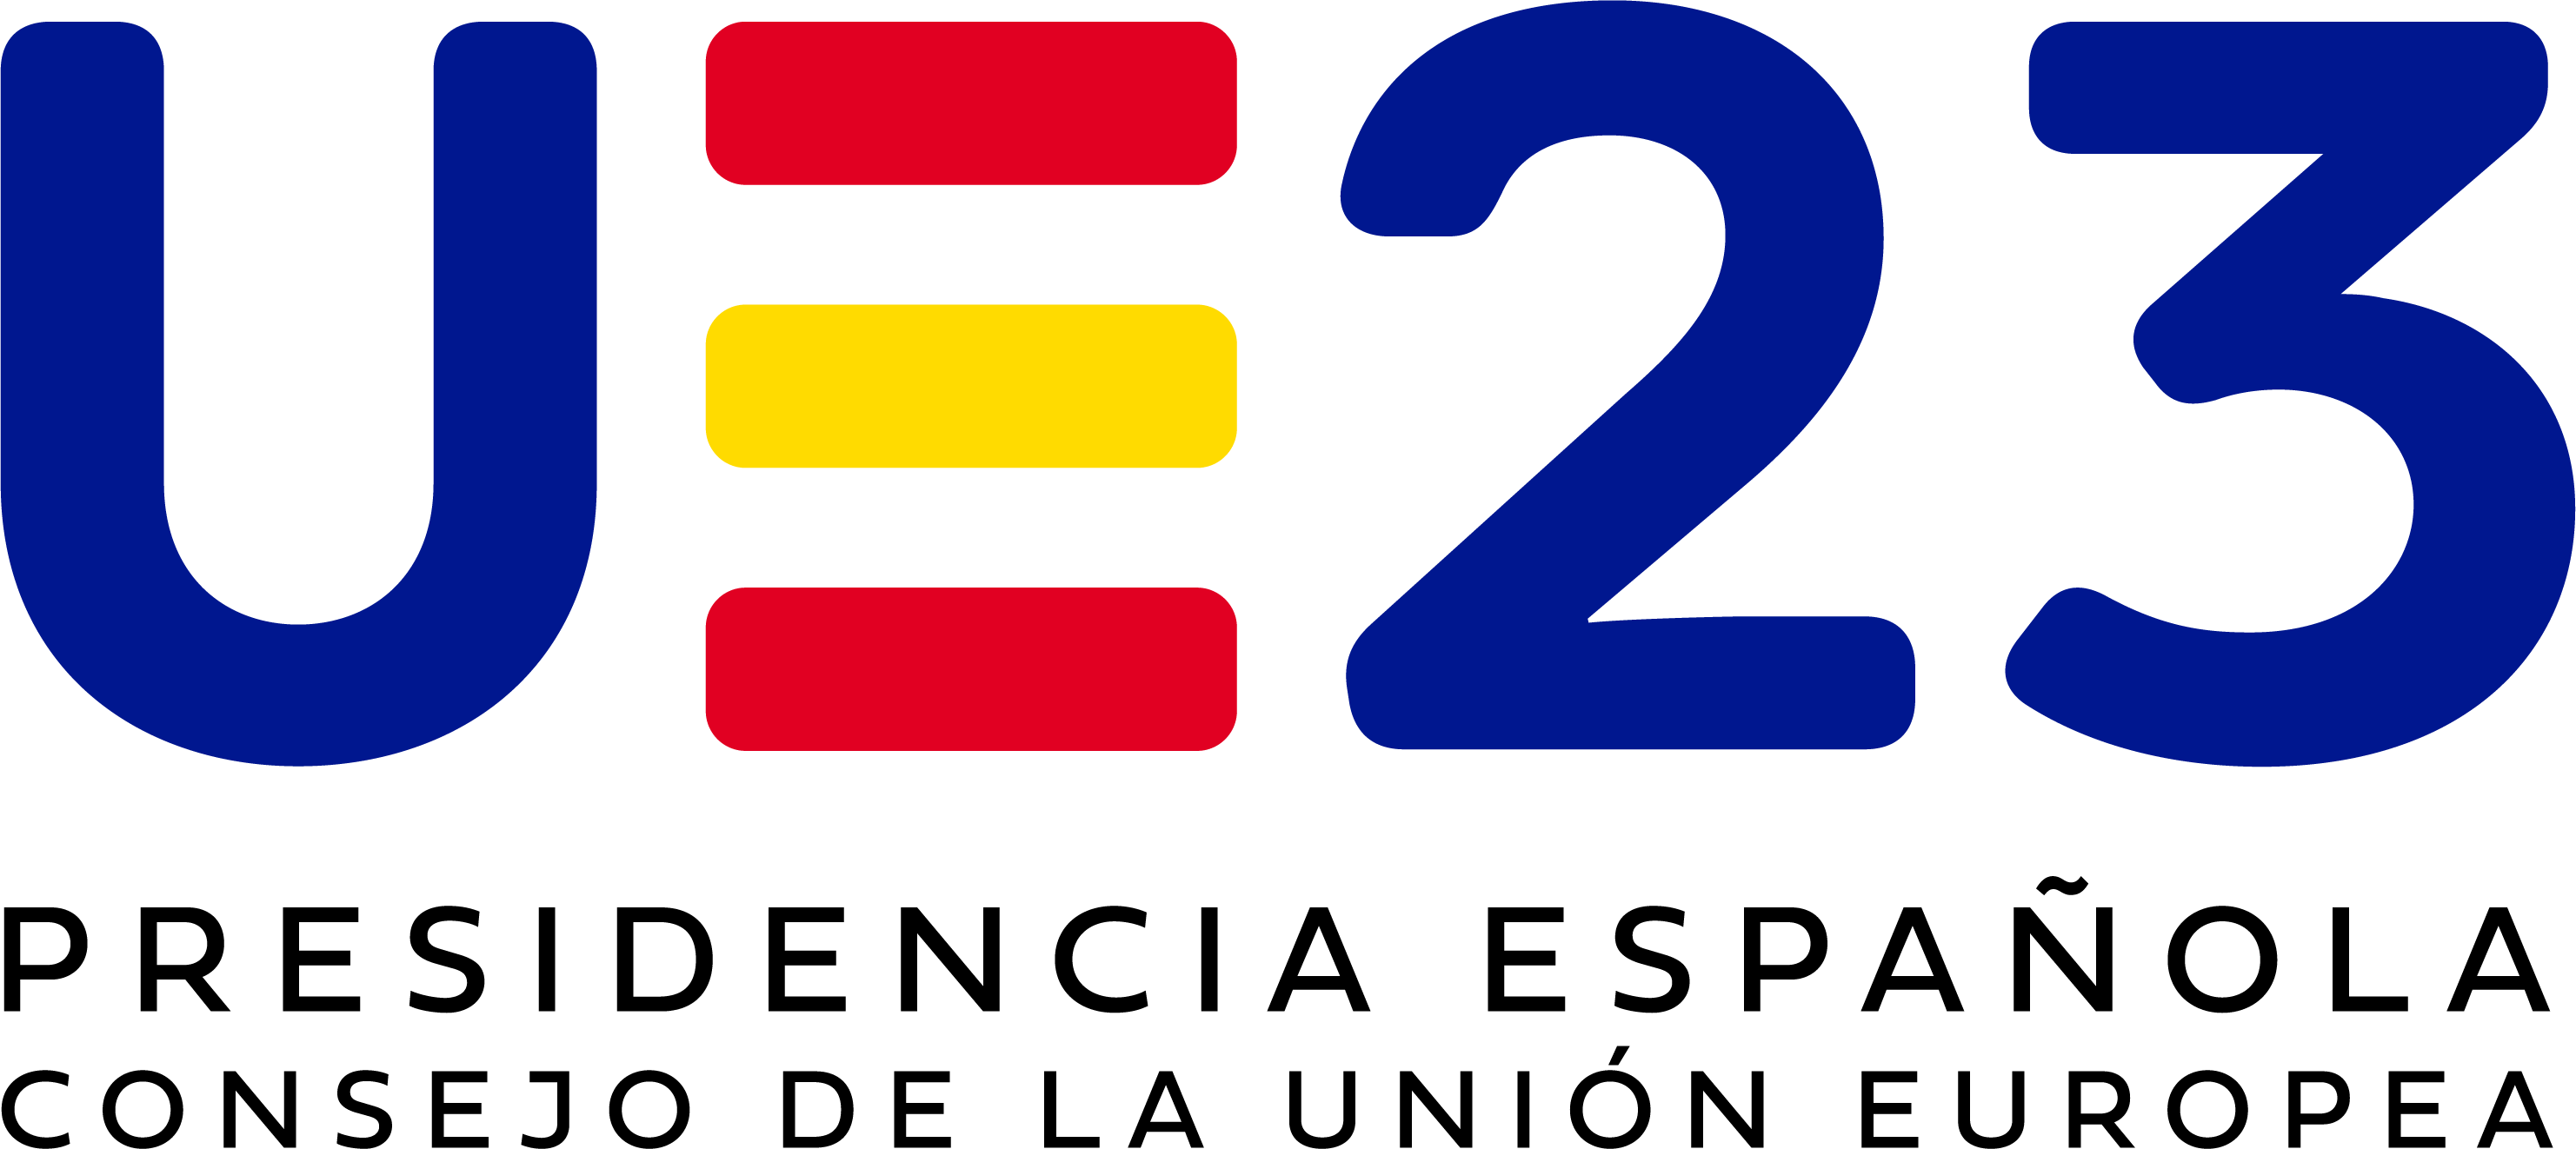 Presidencia española Consejo de la Unión Europea